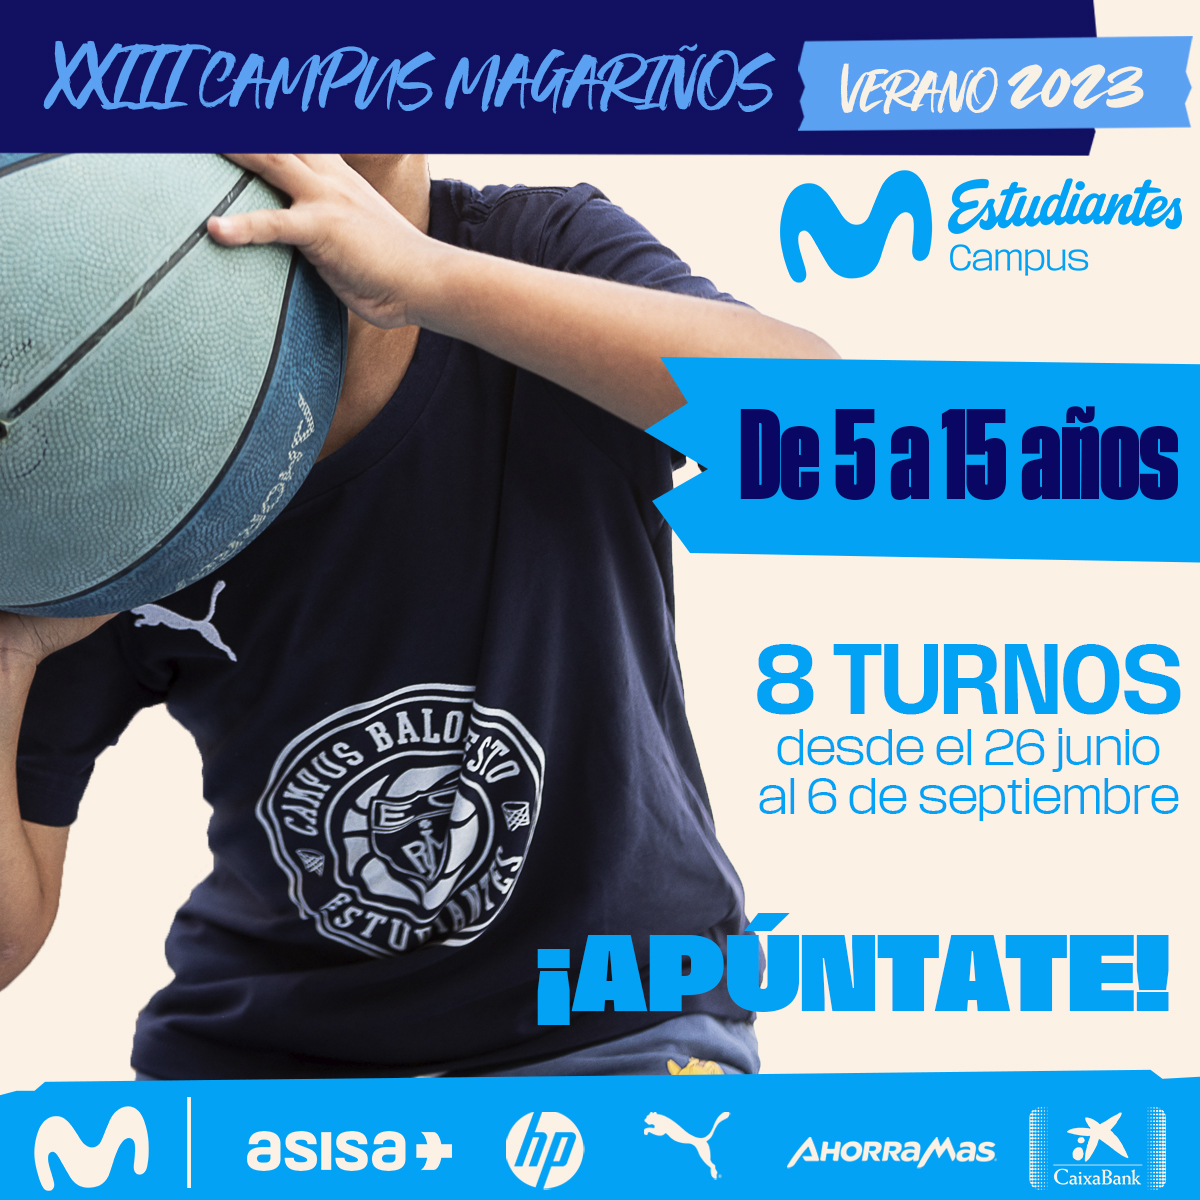 Campus de verano de baloncesto «Magariños 2023» (Madrid)